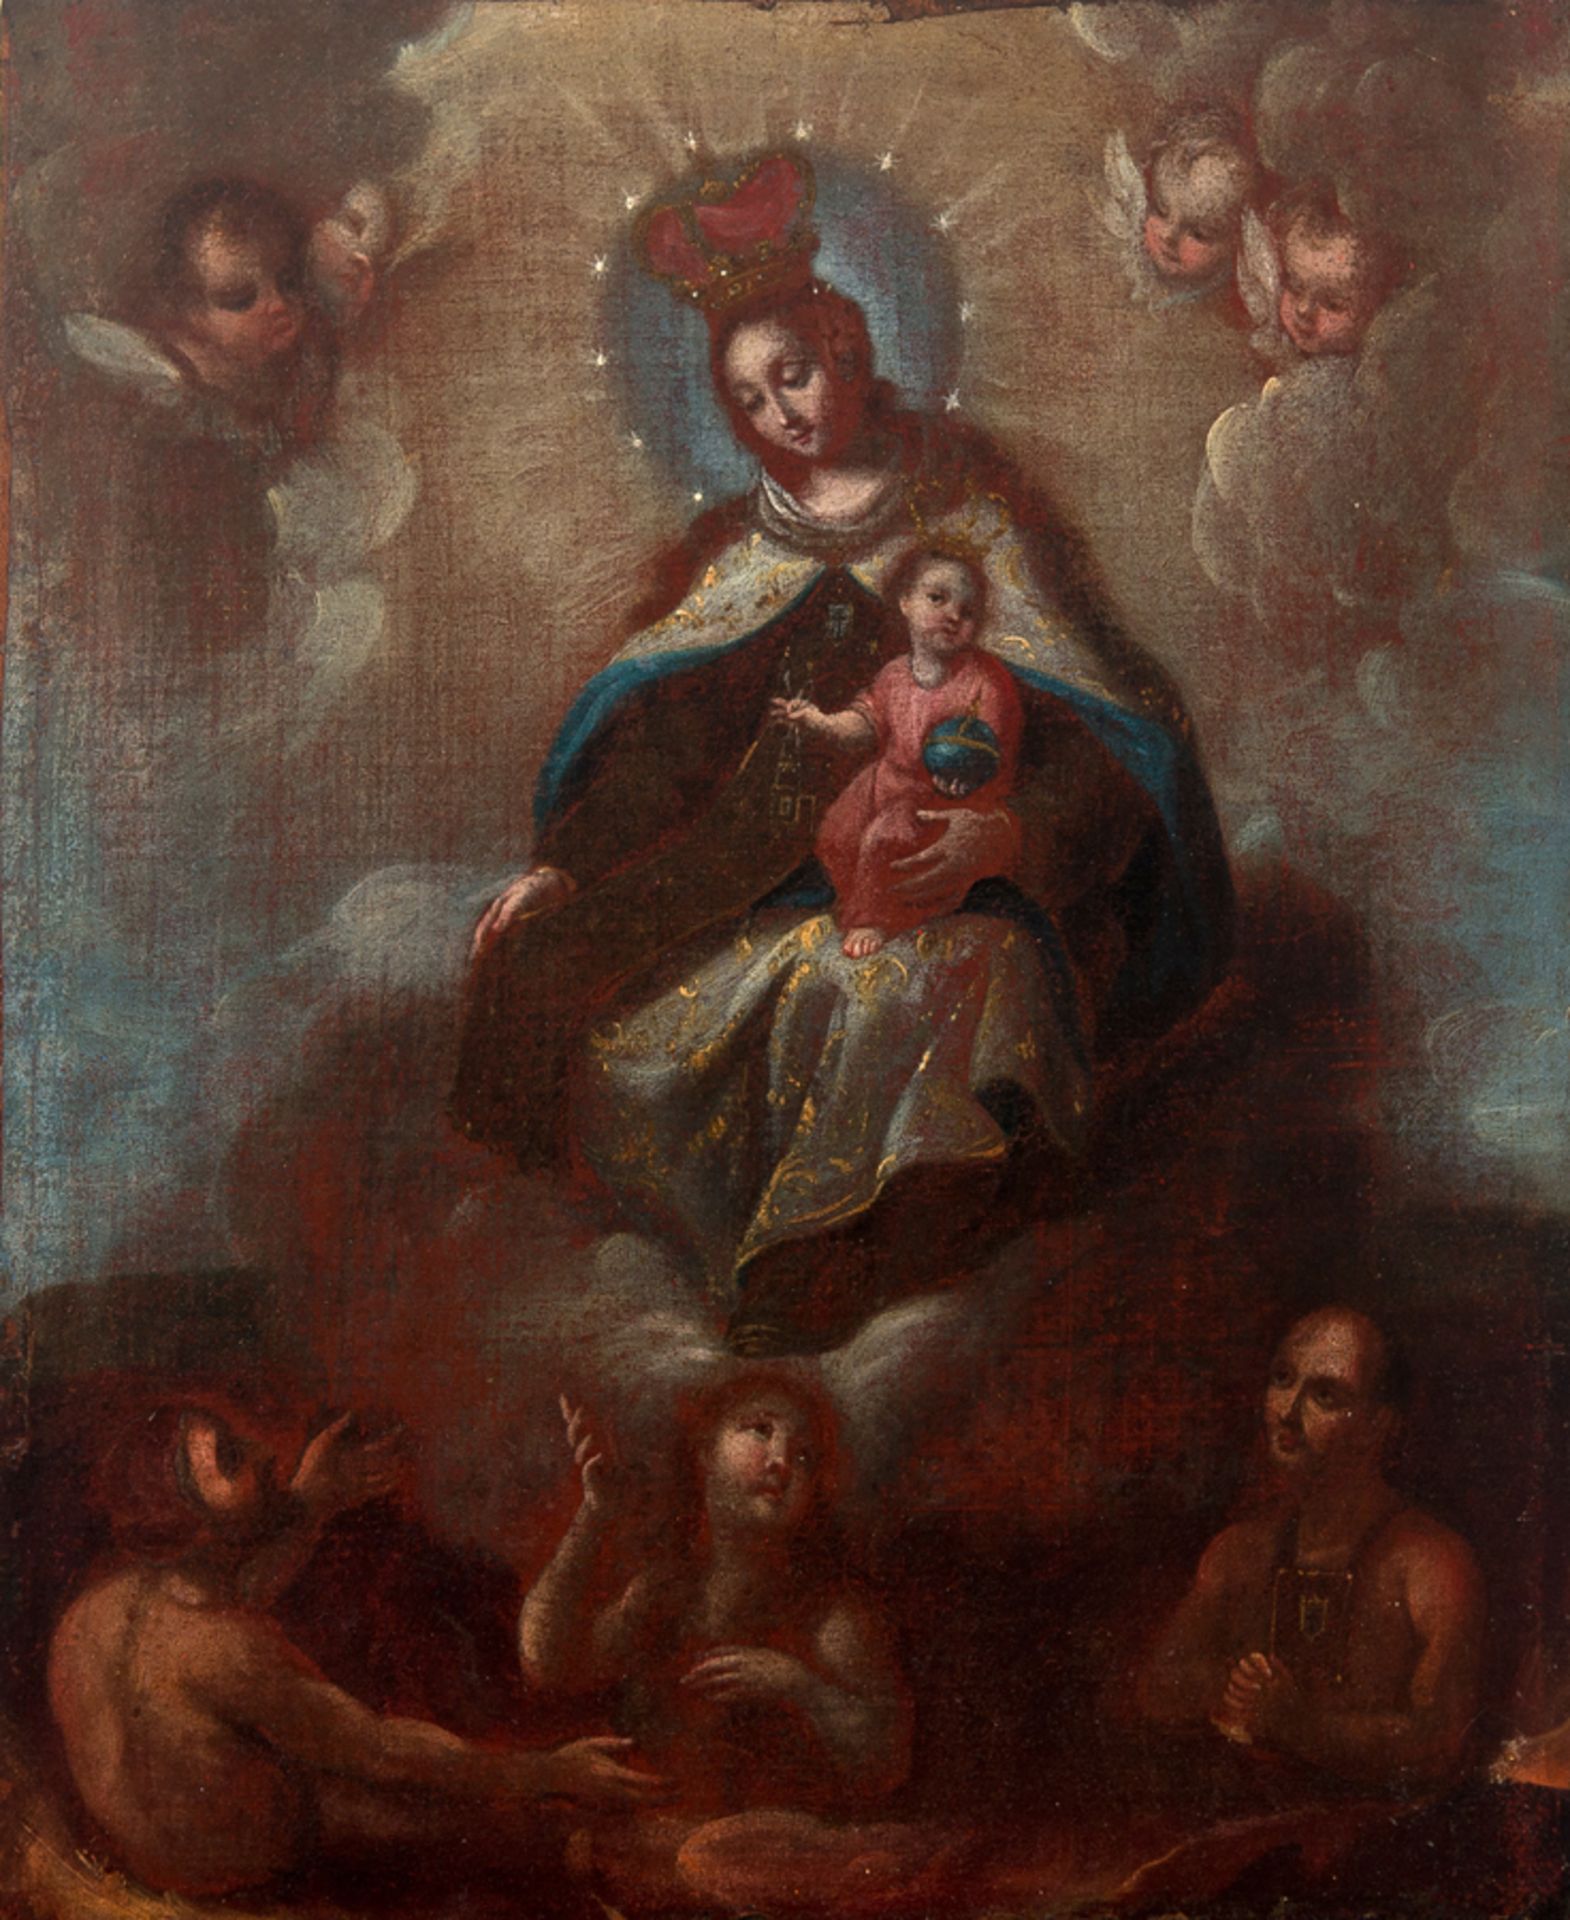 Attributed to Miguel Cabrera (Antequera de Oaxaca, Mexico, 1715 / 1720 - Mexico, 1768)